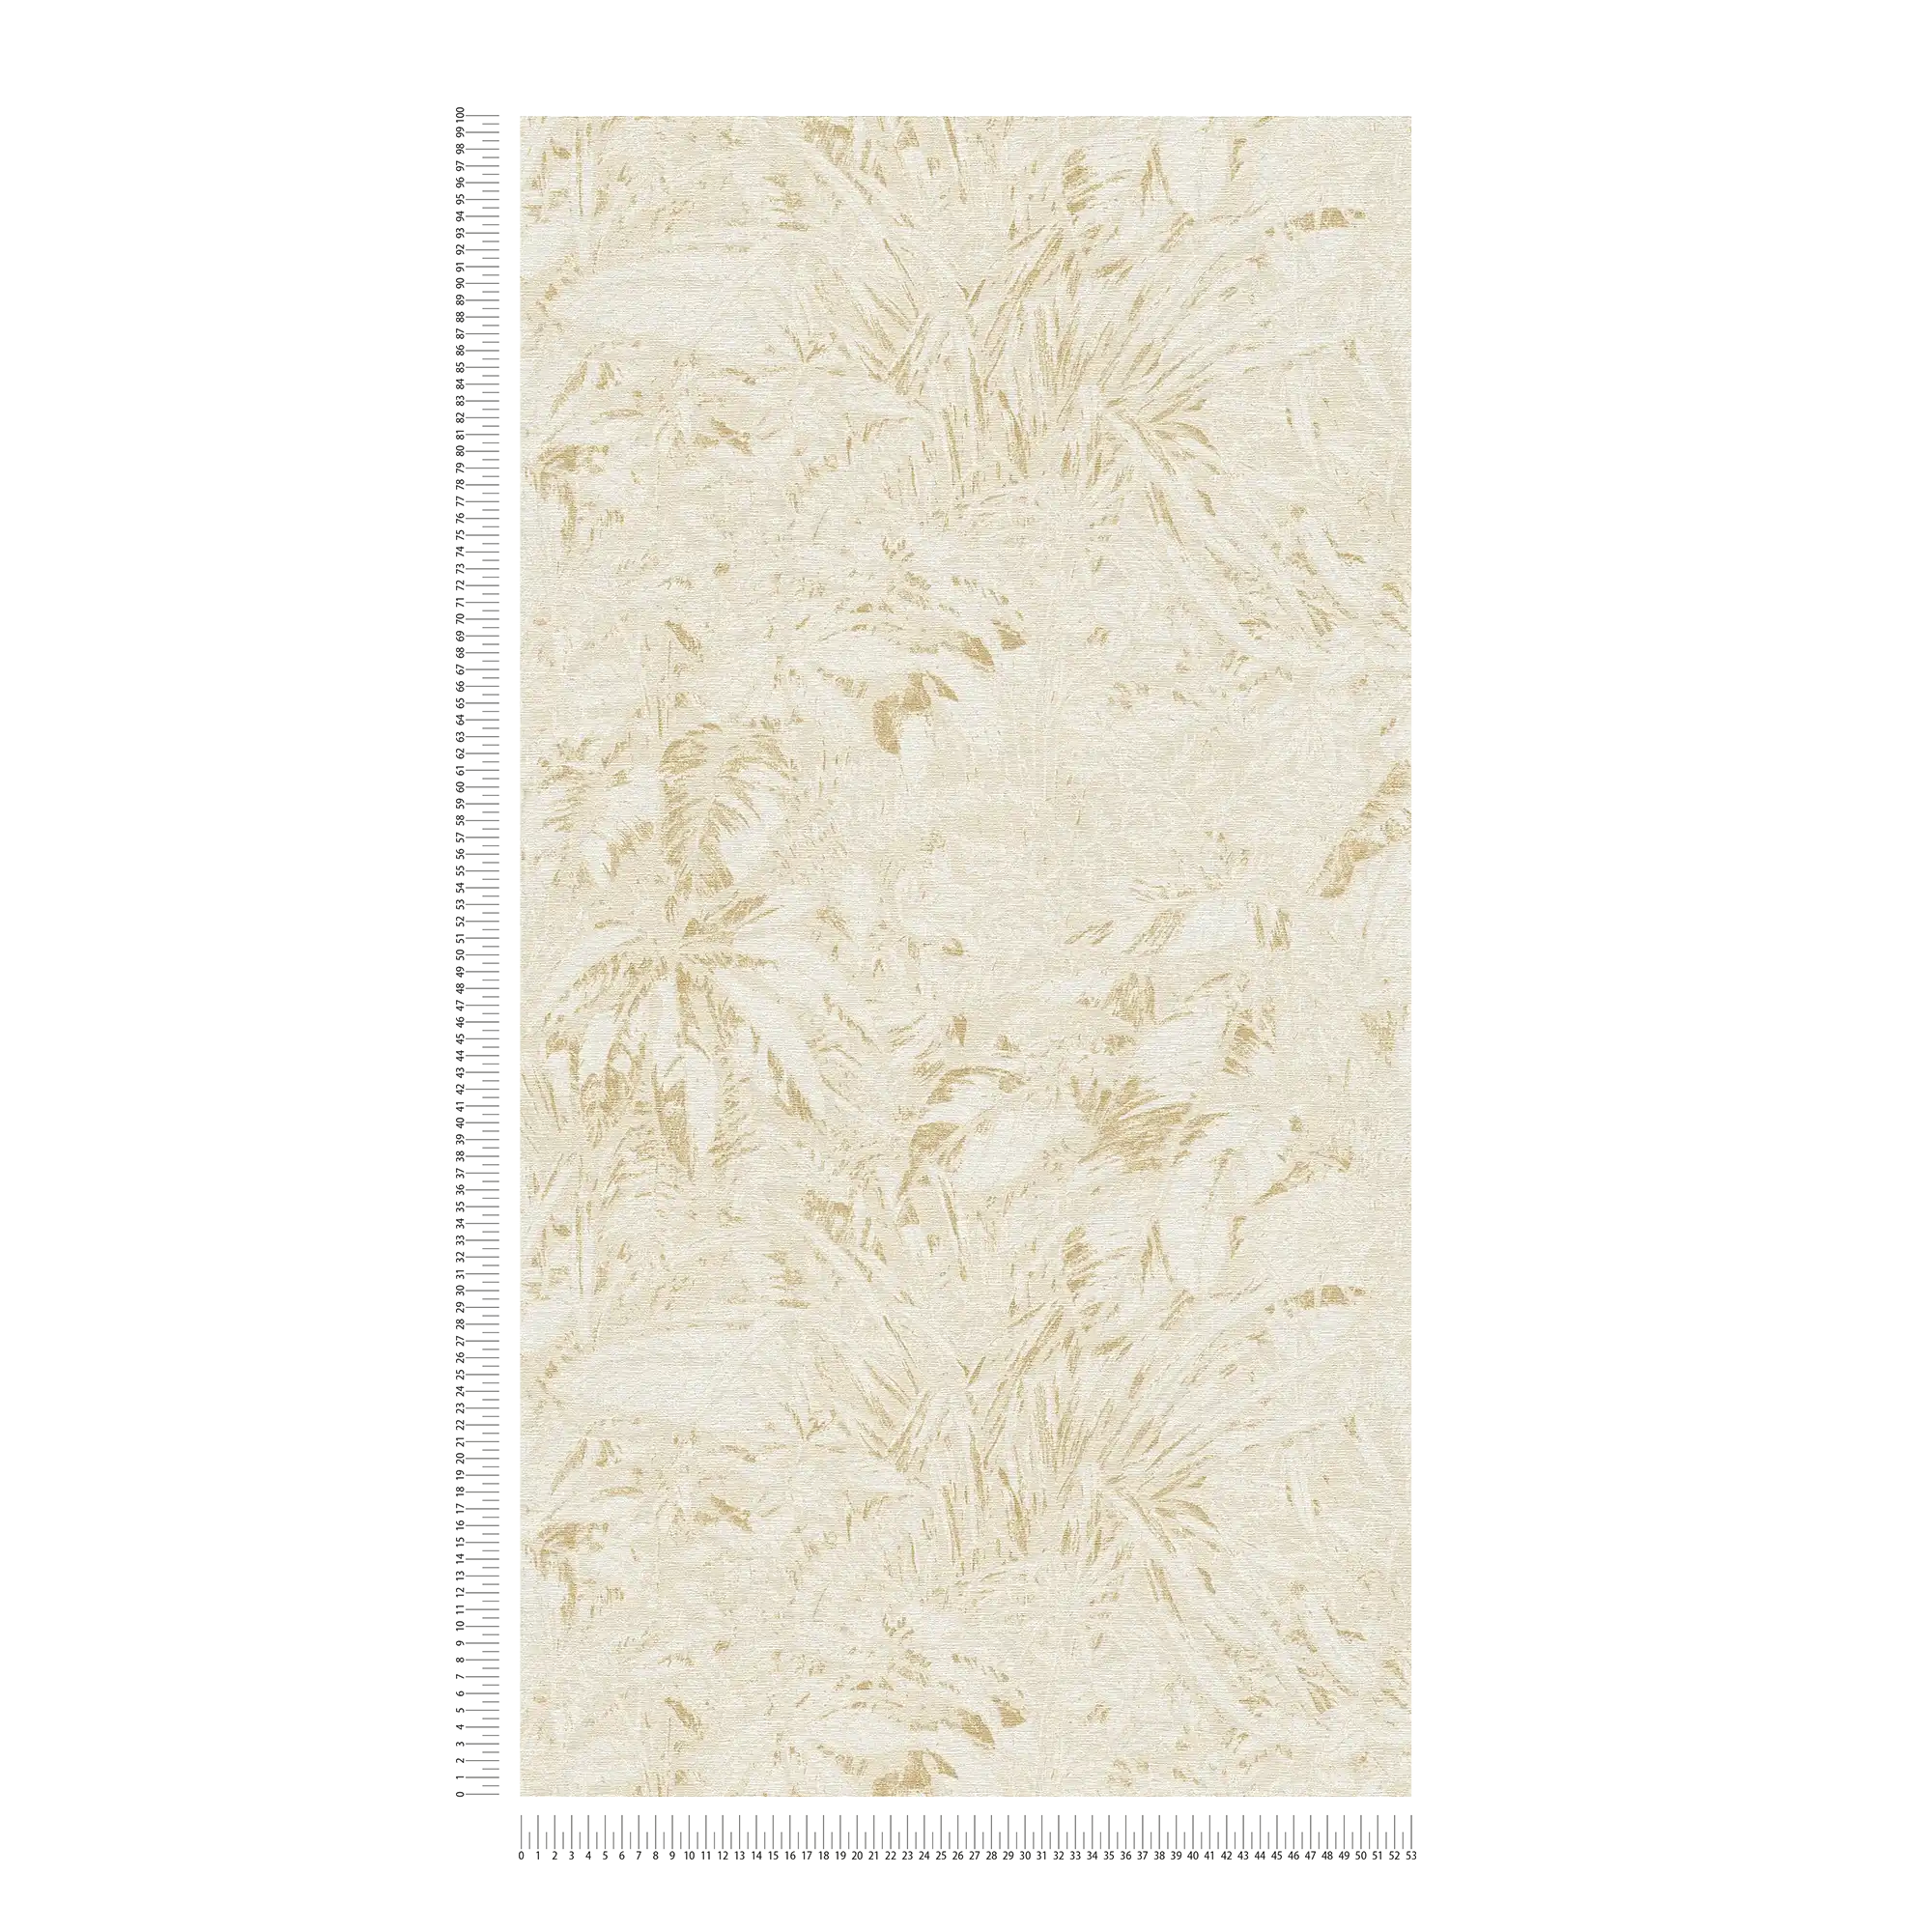             Dschungel Tapete in sanften Farben mit Blatt Muster – Beige, Weiß, Gold
        